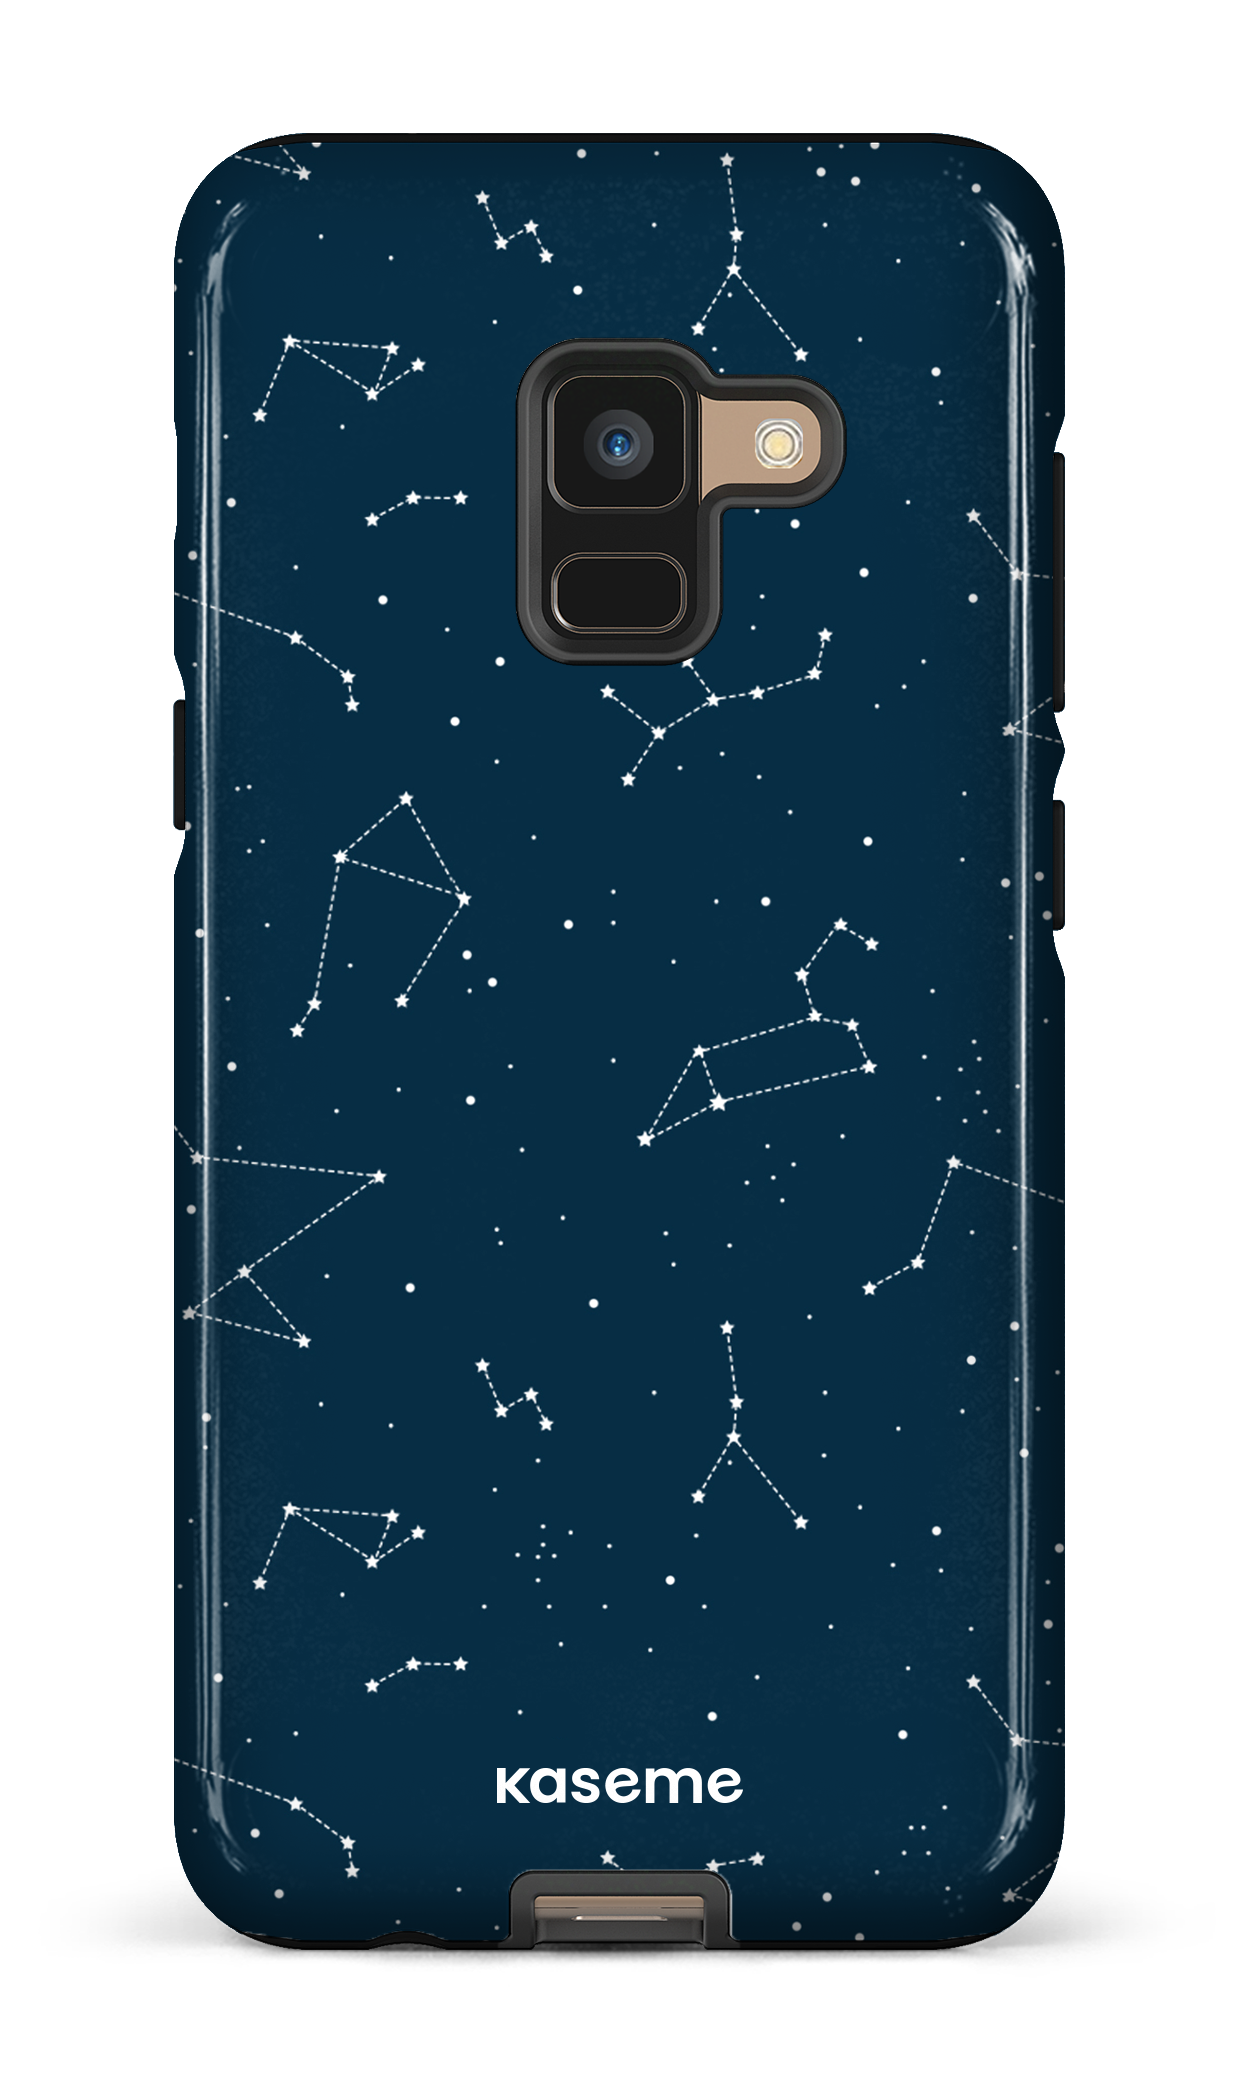 Cosmos - Galaxy A8